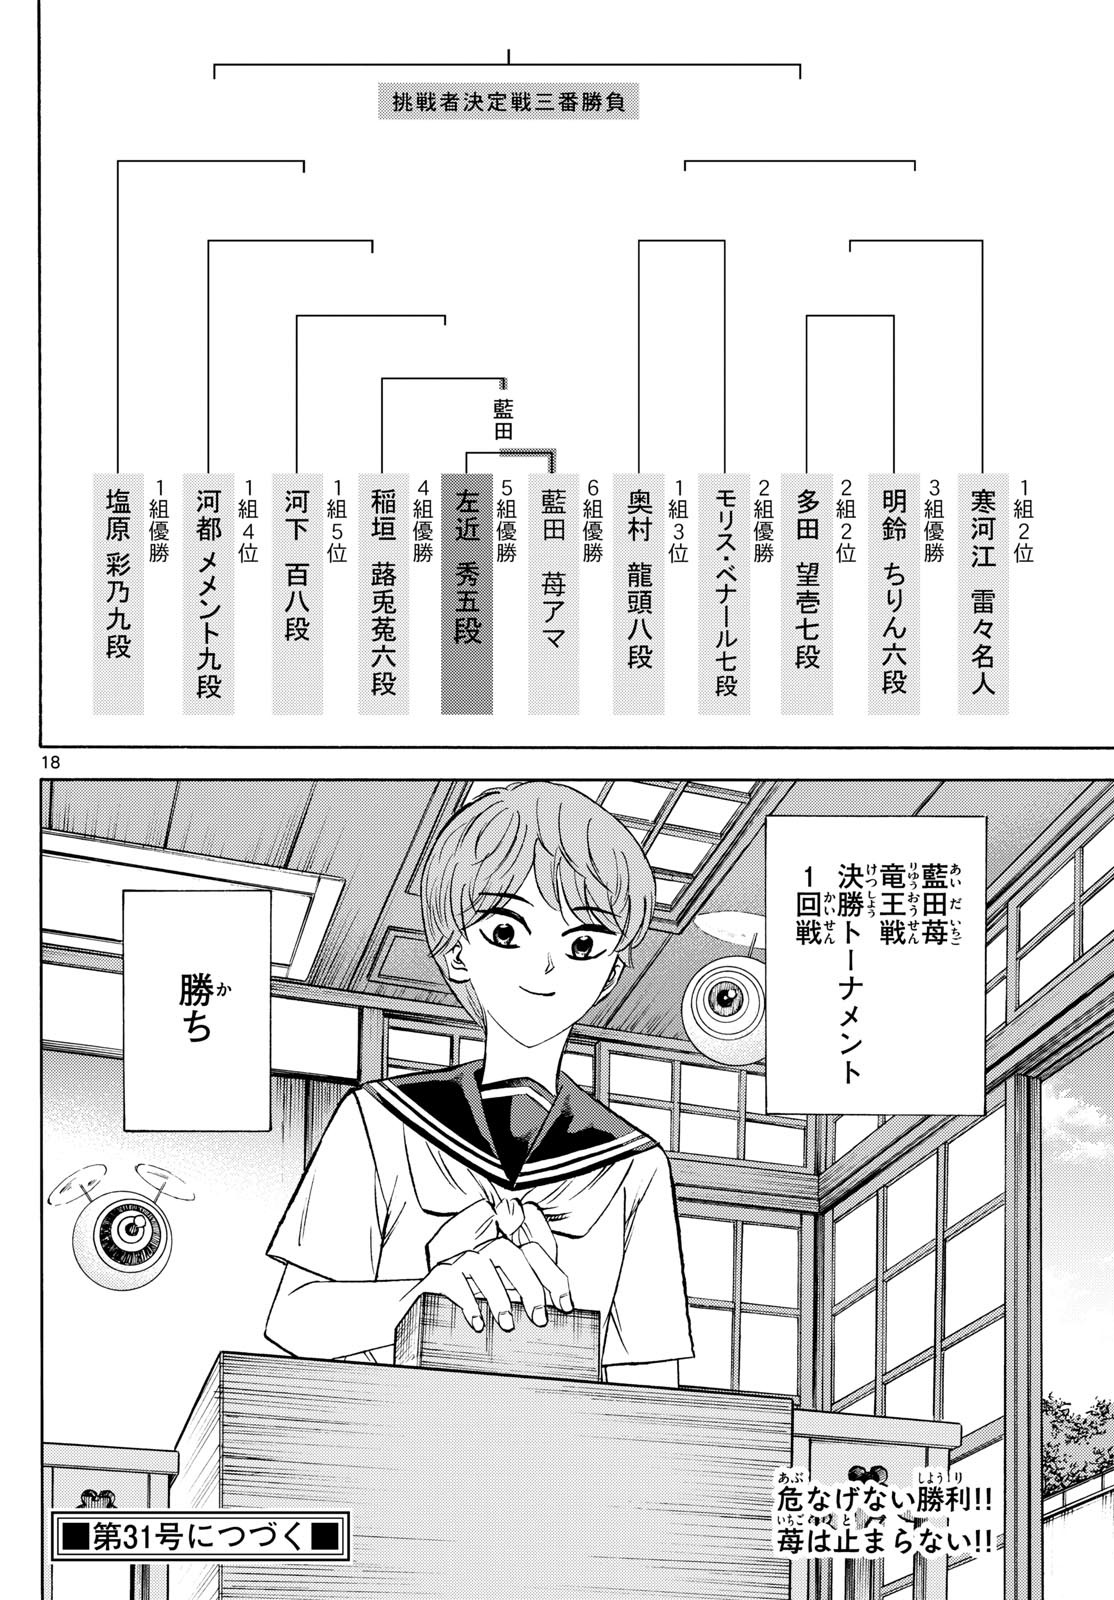 Ryu-to-Ichigo - Chapter 196 - Page 18